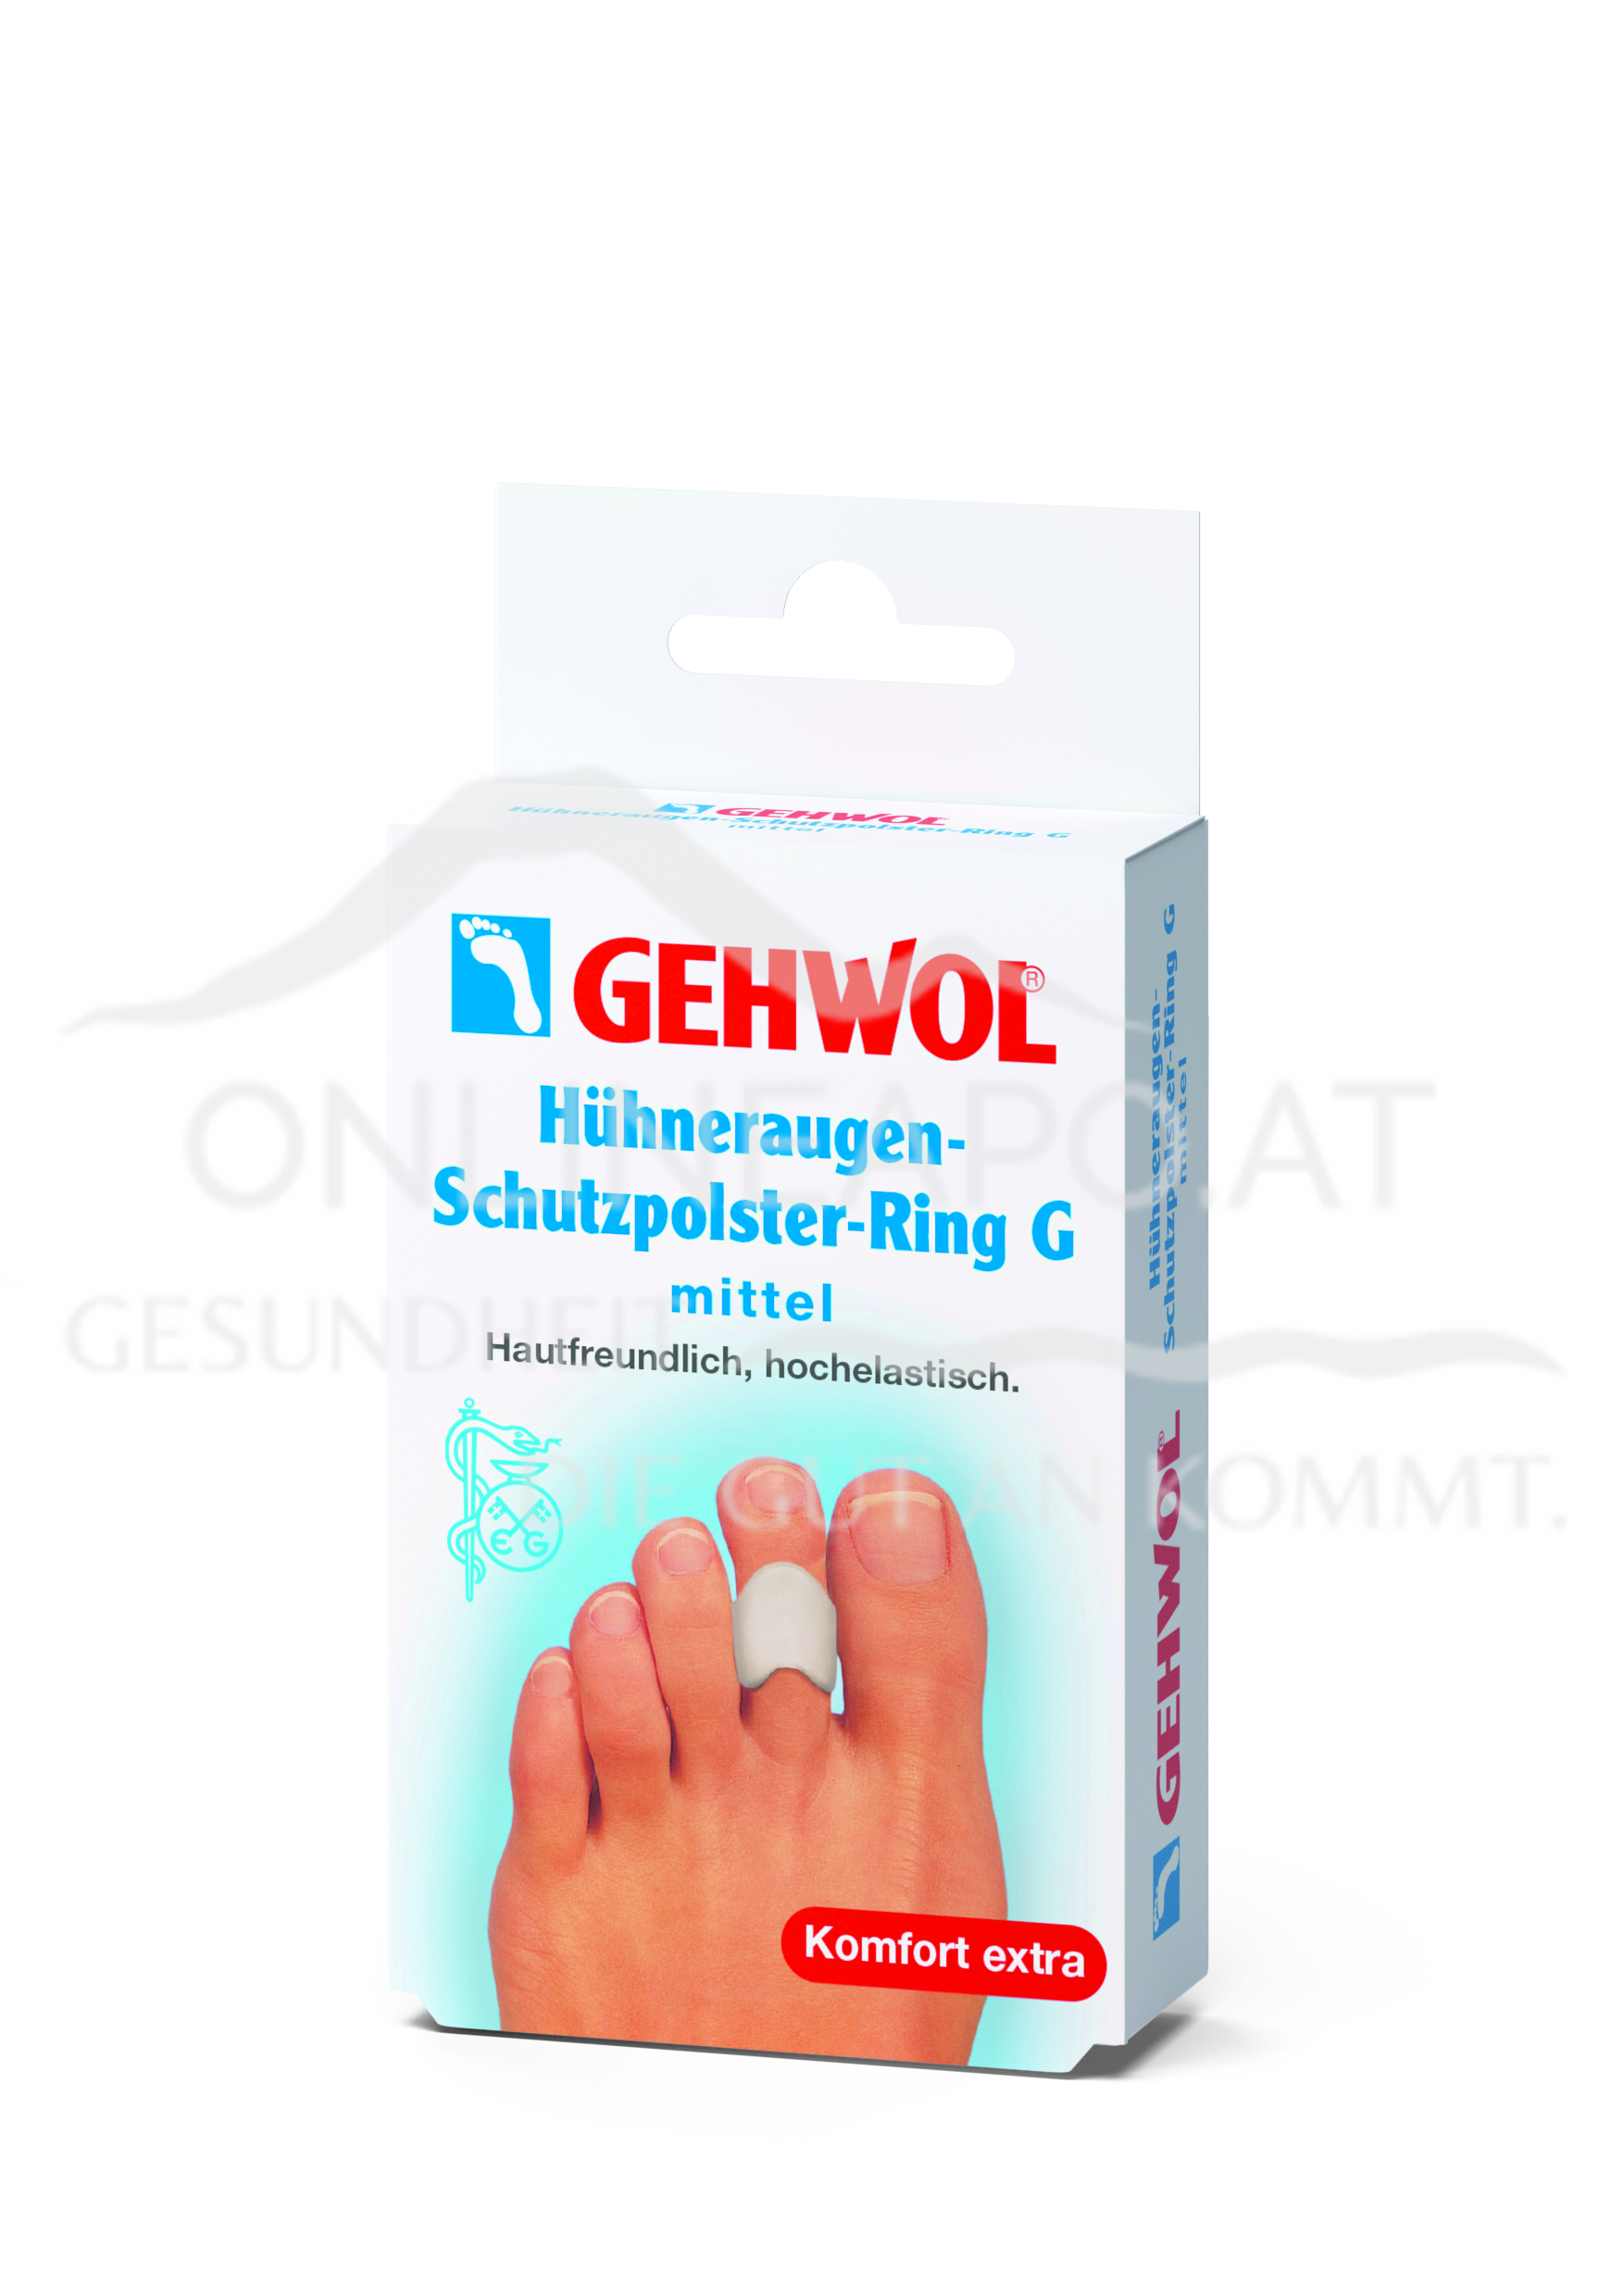 GEHWOL® Hühneraugen-Schutzpolster- Ring G mittel